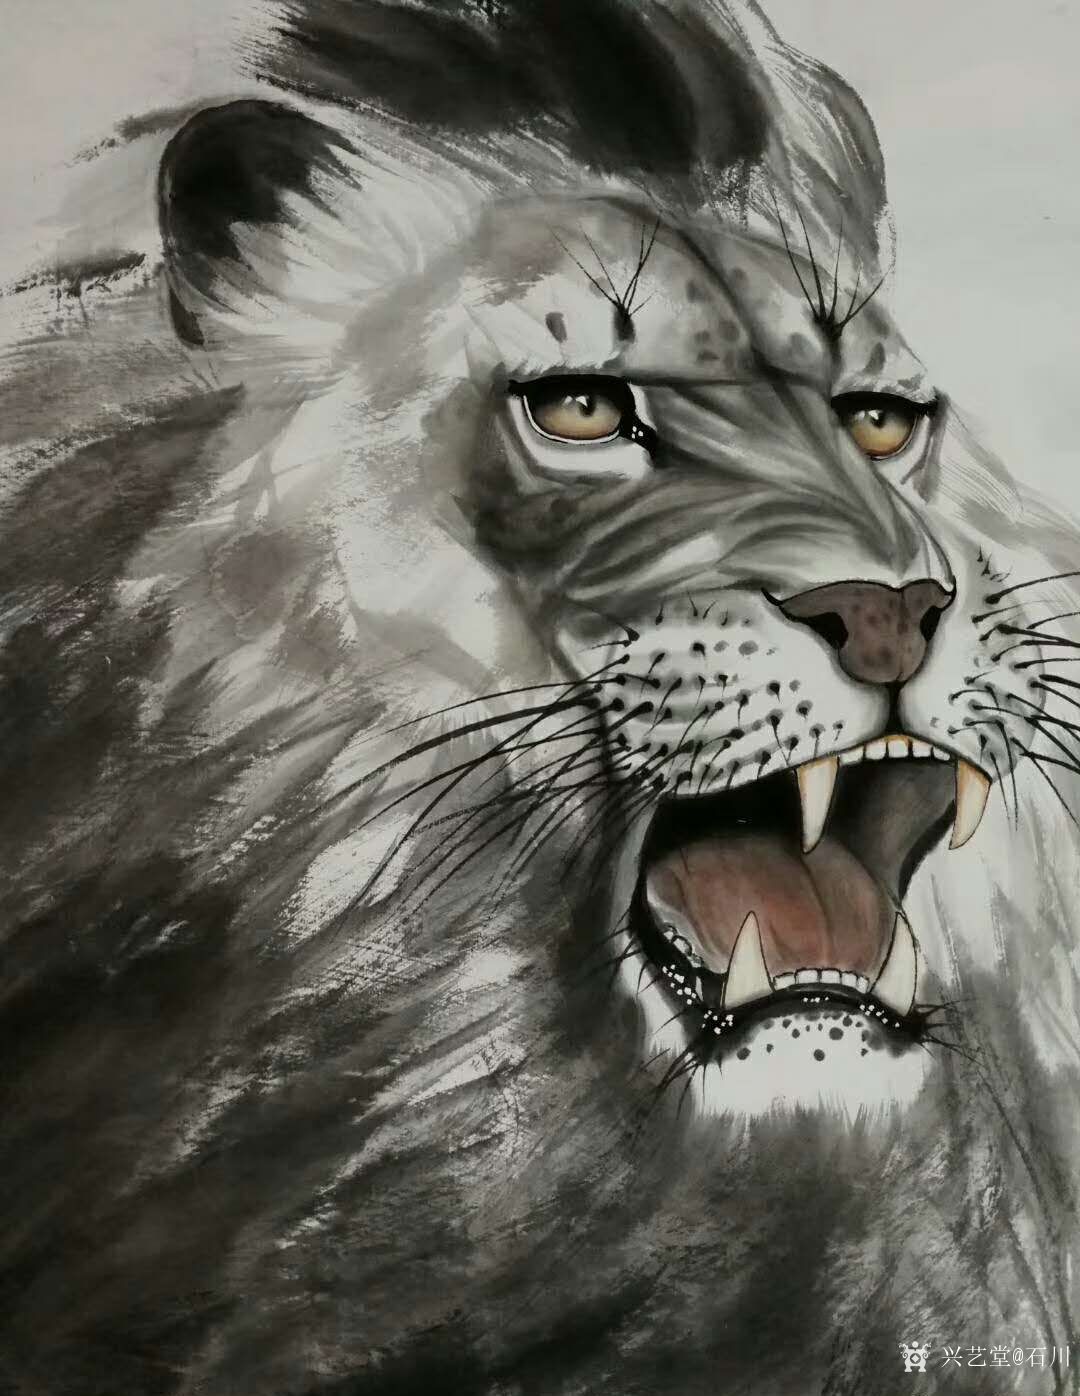 国画动物画系列之雄狮《王者之风》